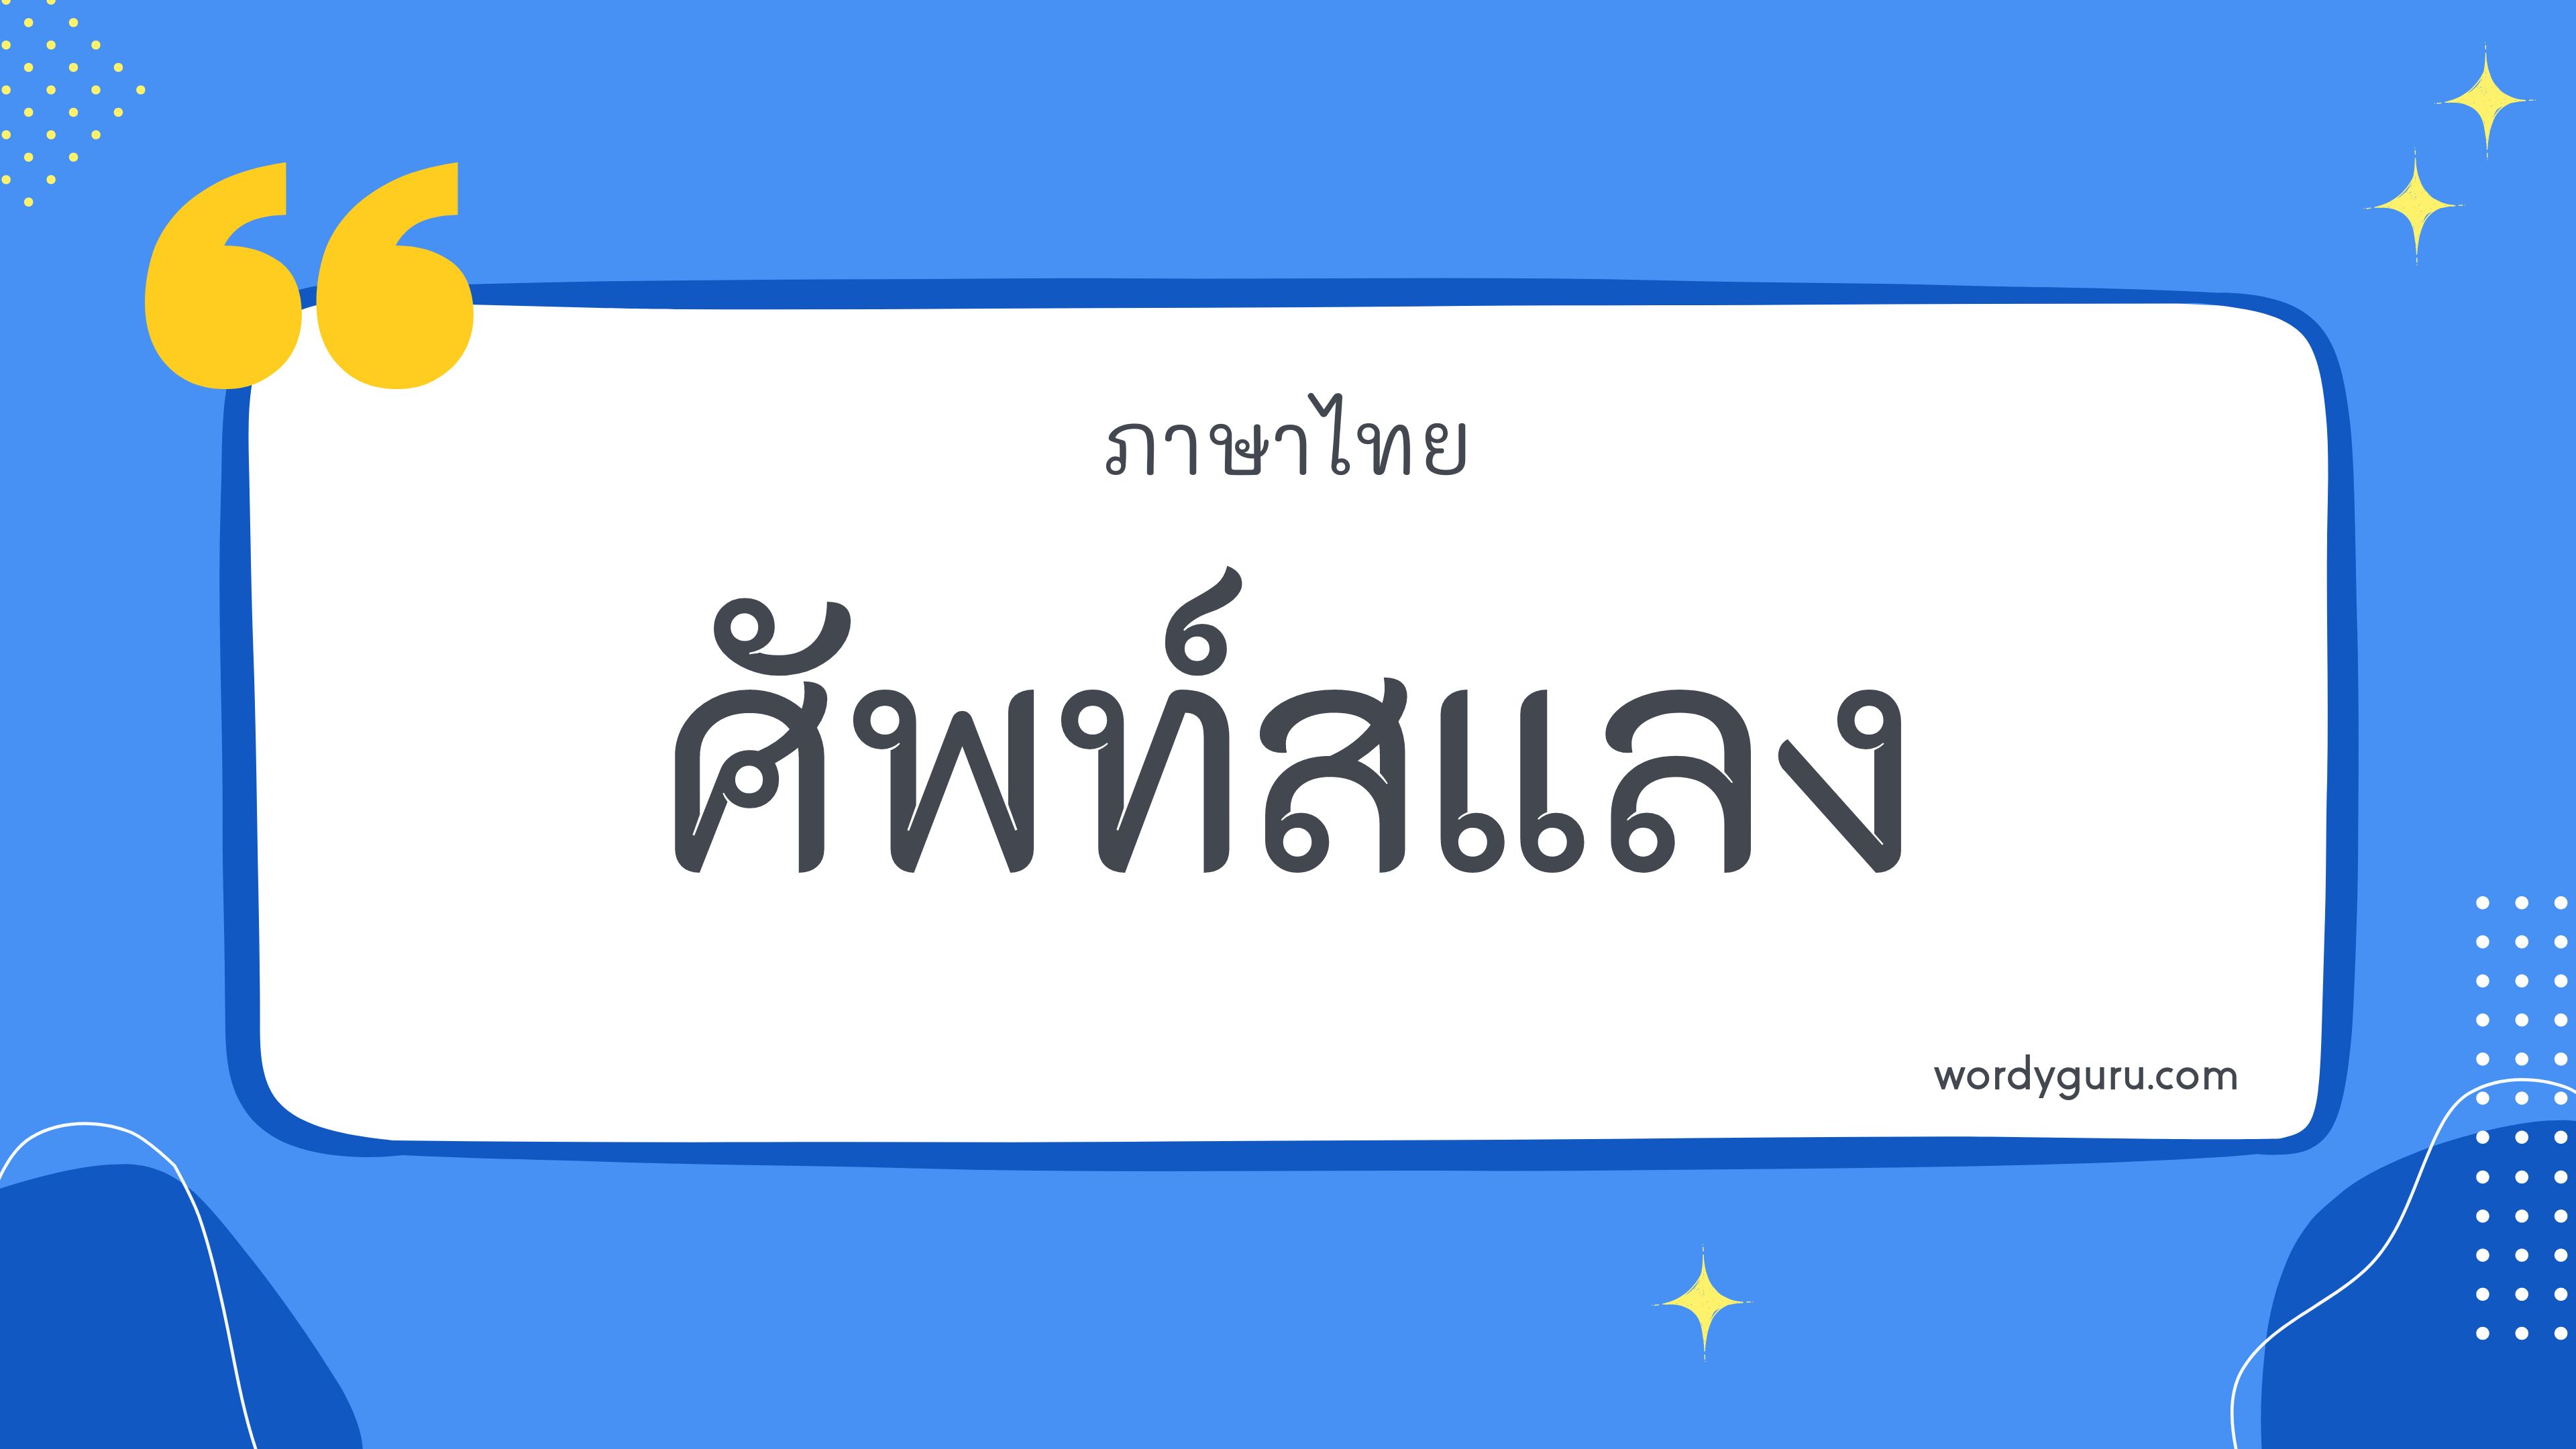 คำไทย 41 คำ ที่นิยมใช้ พบเห็นบ่อย ในชีวิตประจำวัน